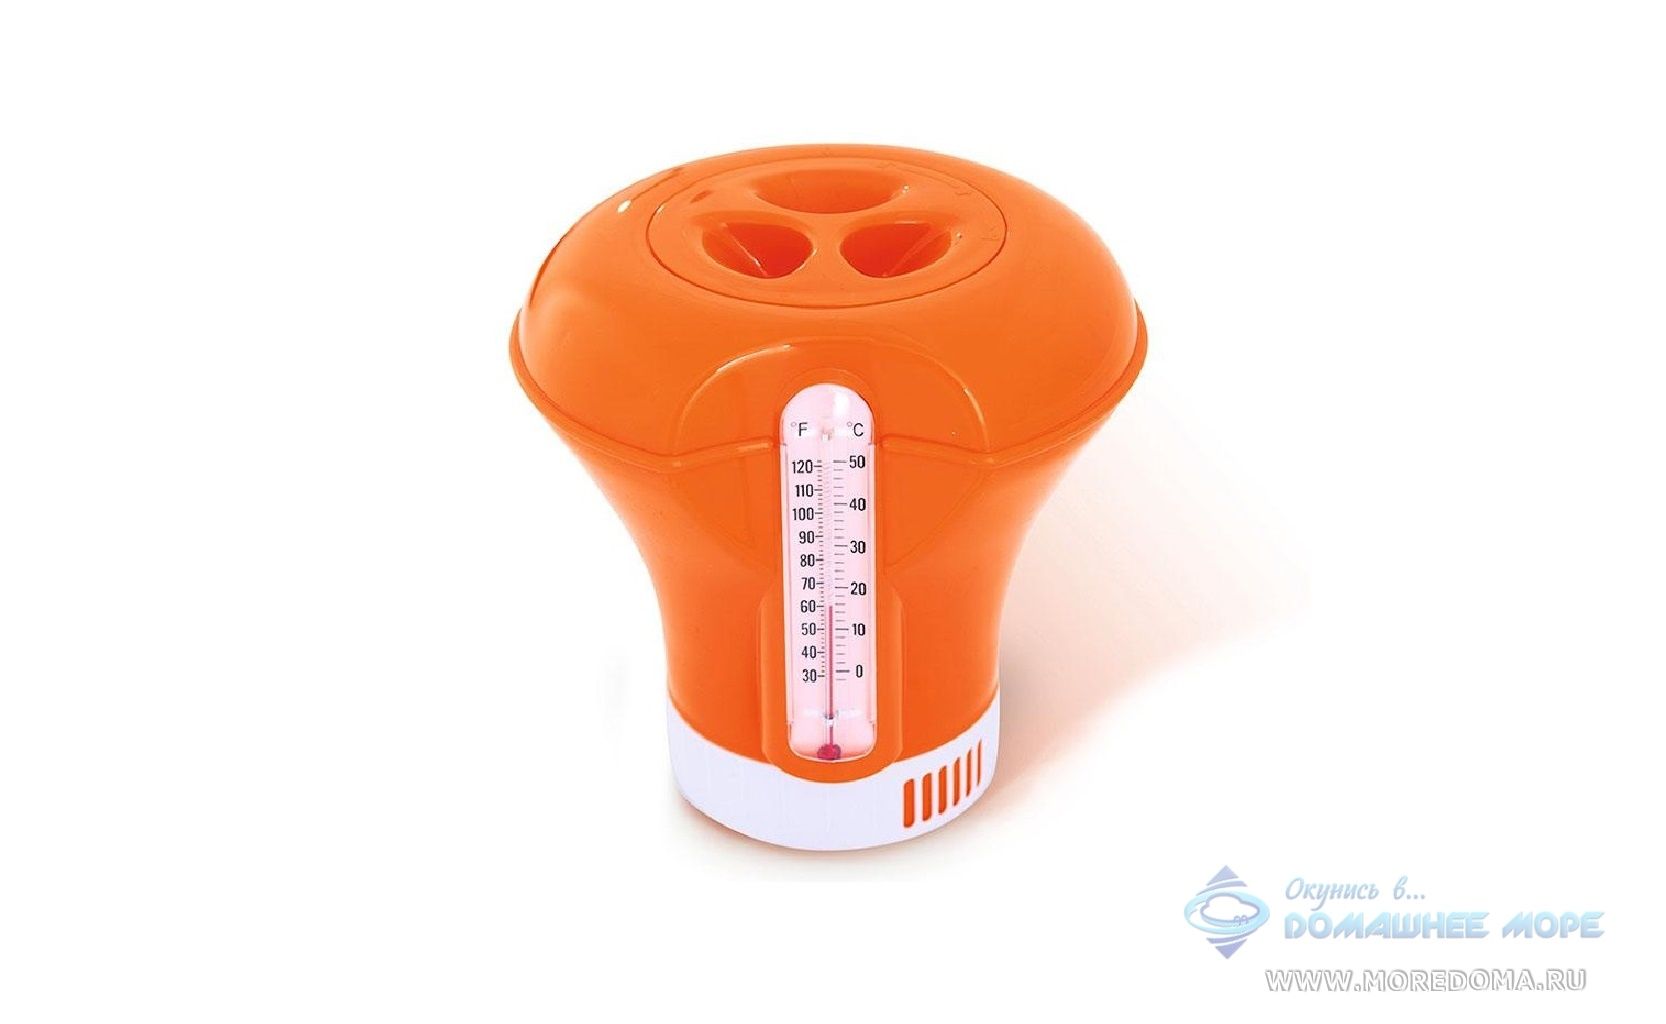 Поплавок-дозатор Bestway с термометром ; артикул 58209 (оранжевый)